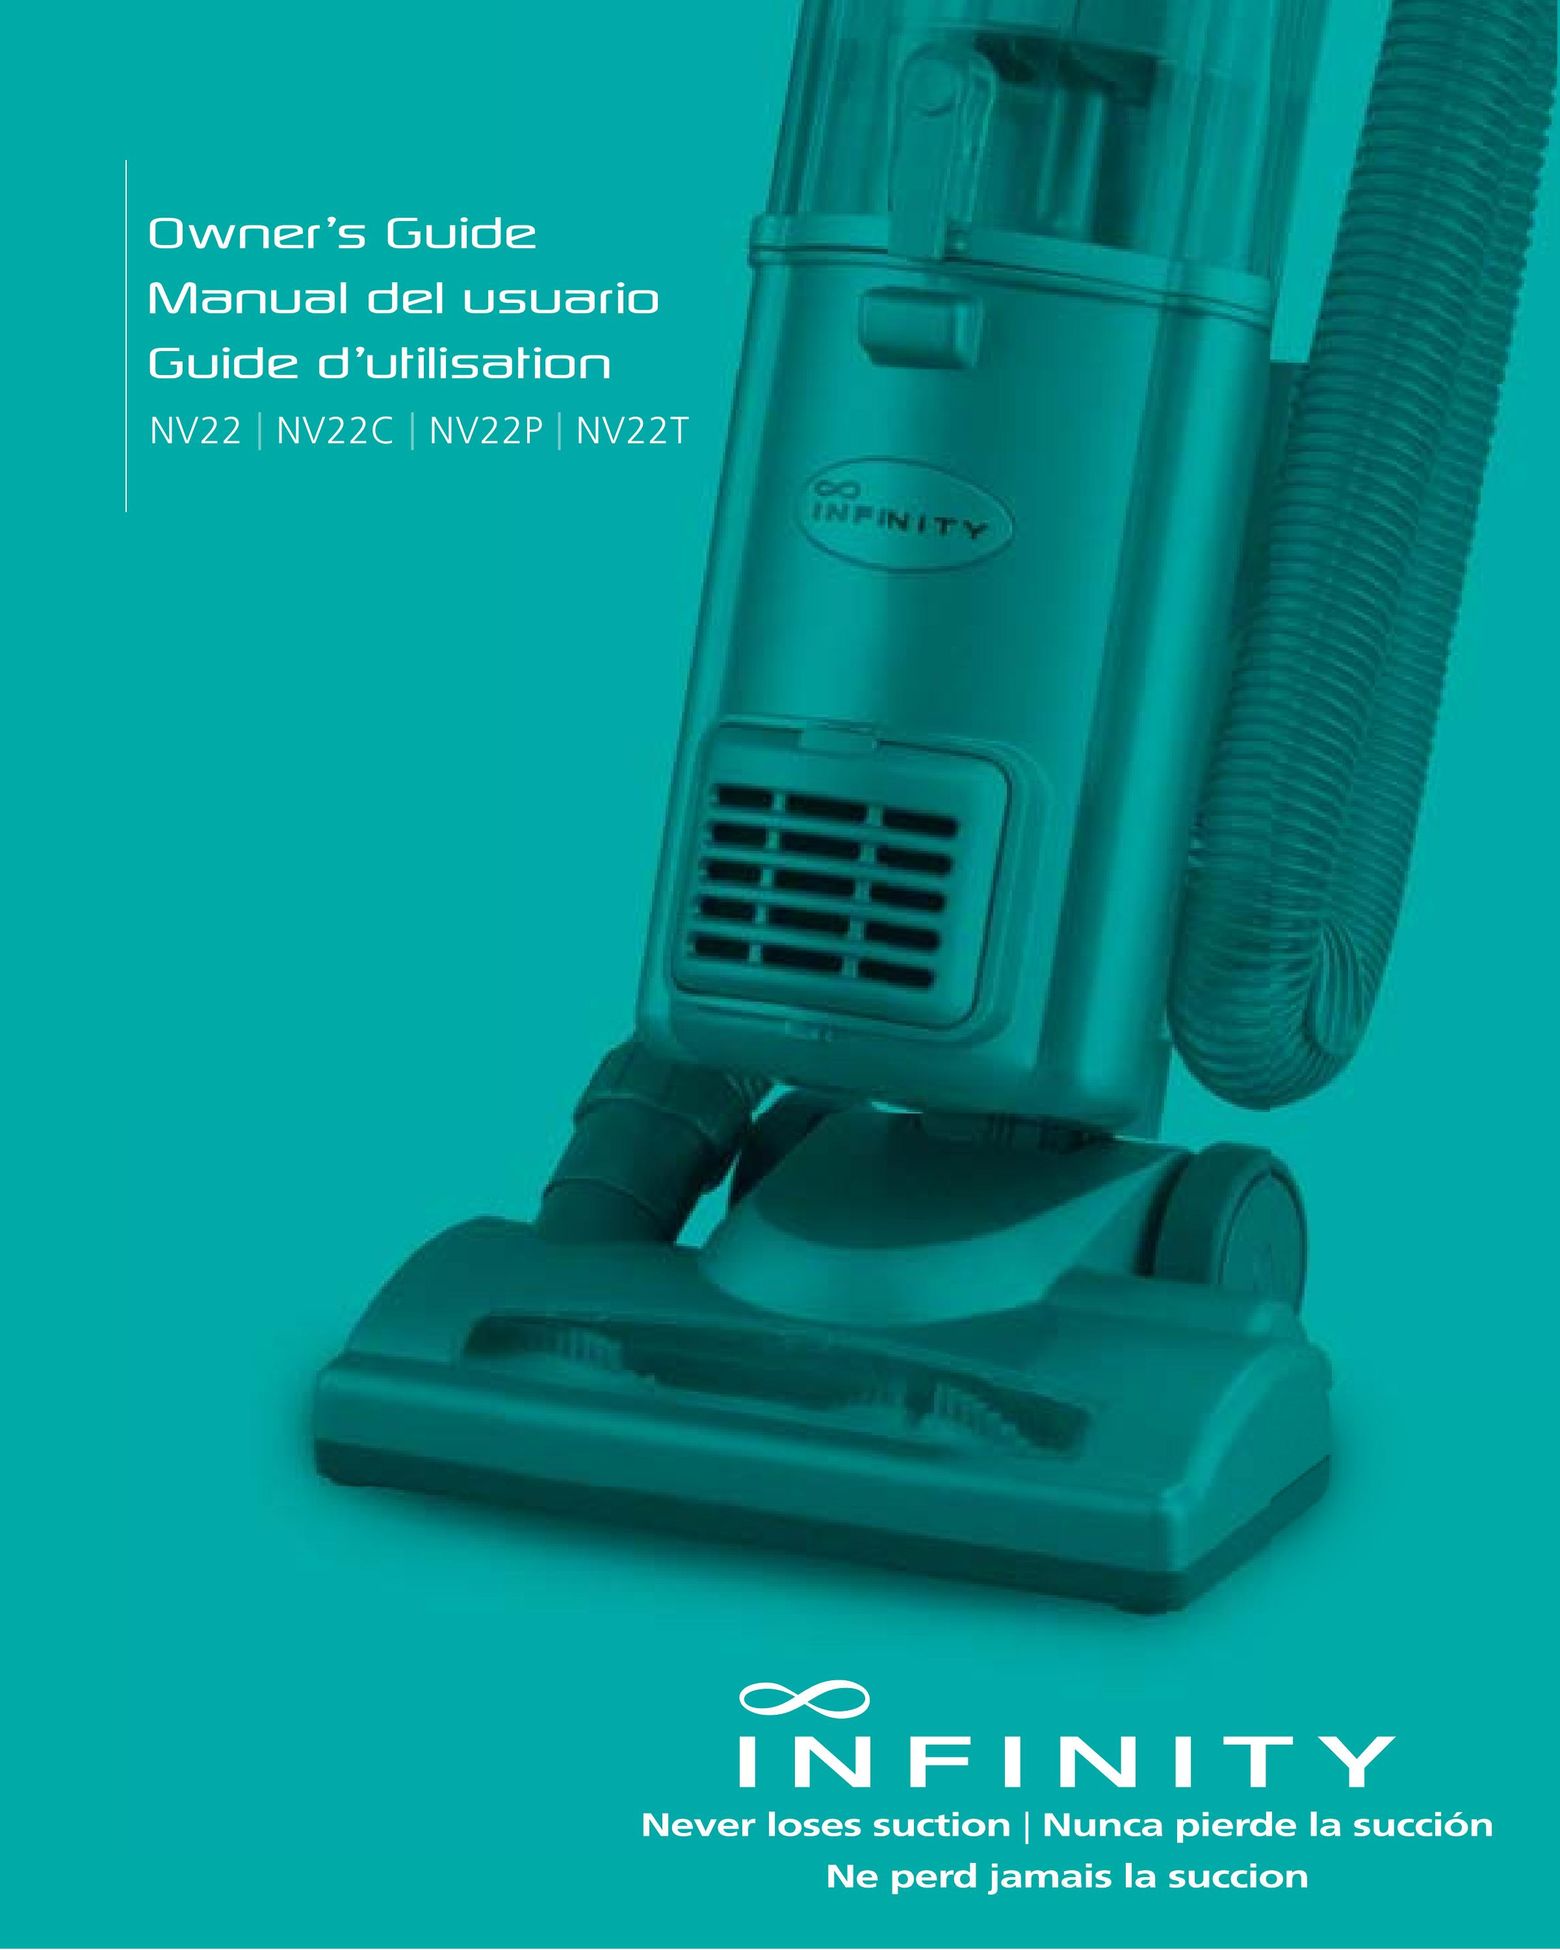 Infinity NV22C Vacuum Cleaner User Manual